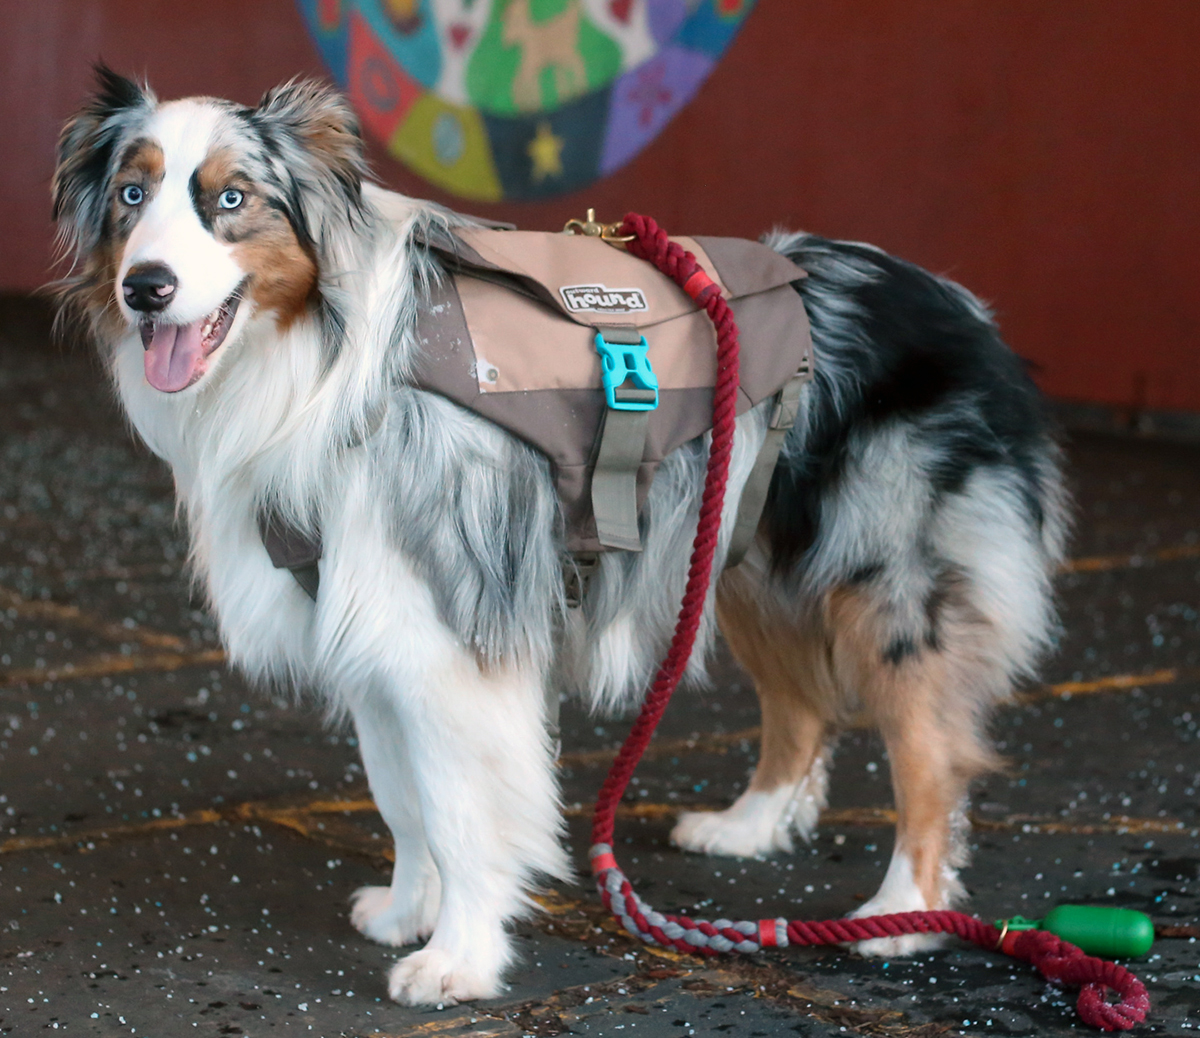 Denver Urban Dog Backpack Fitting Instructions